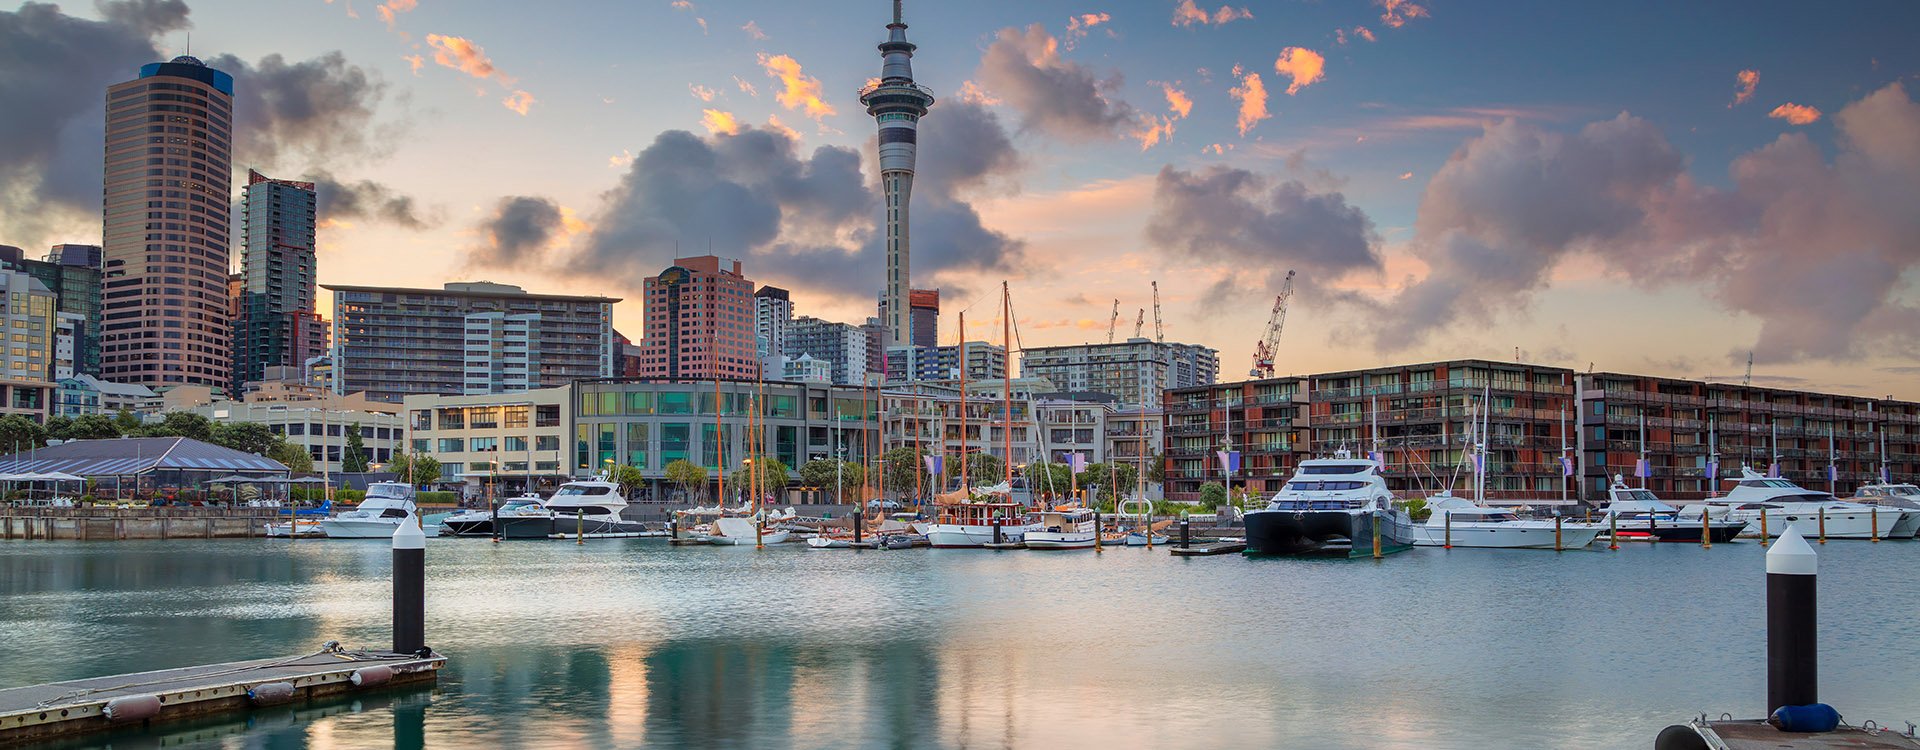 Cityscape image of Auckland skyline, New Zealand during sunrise